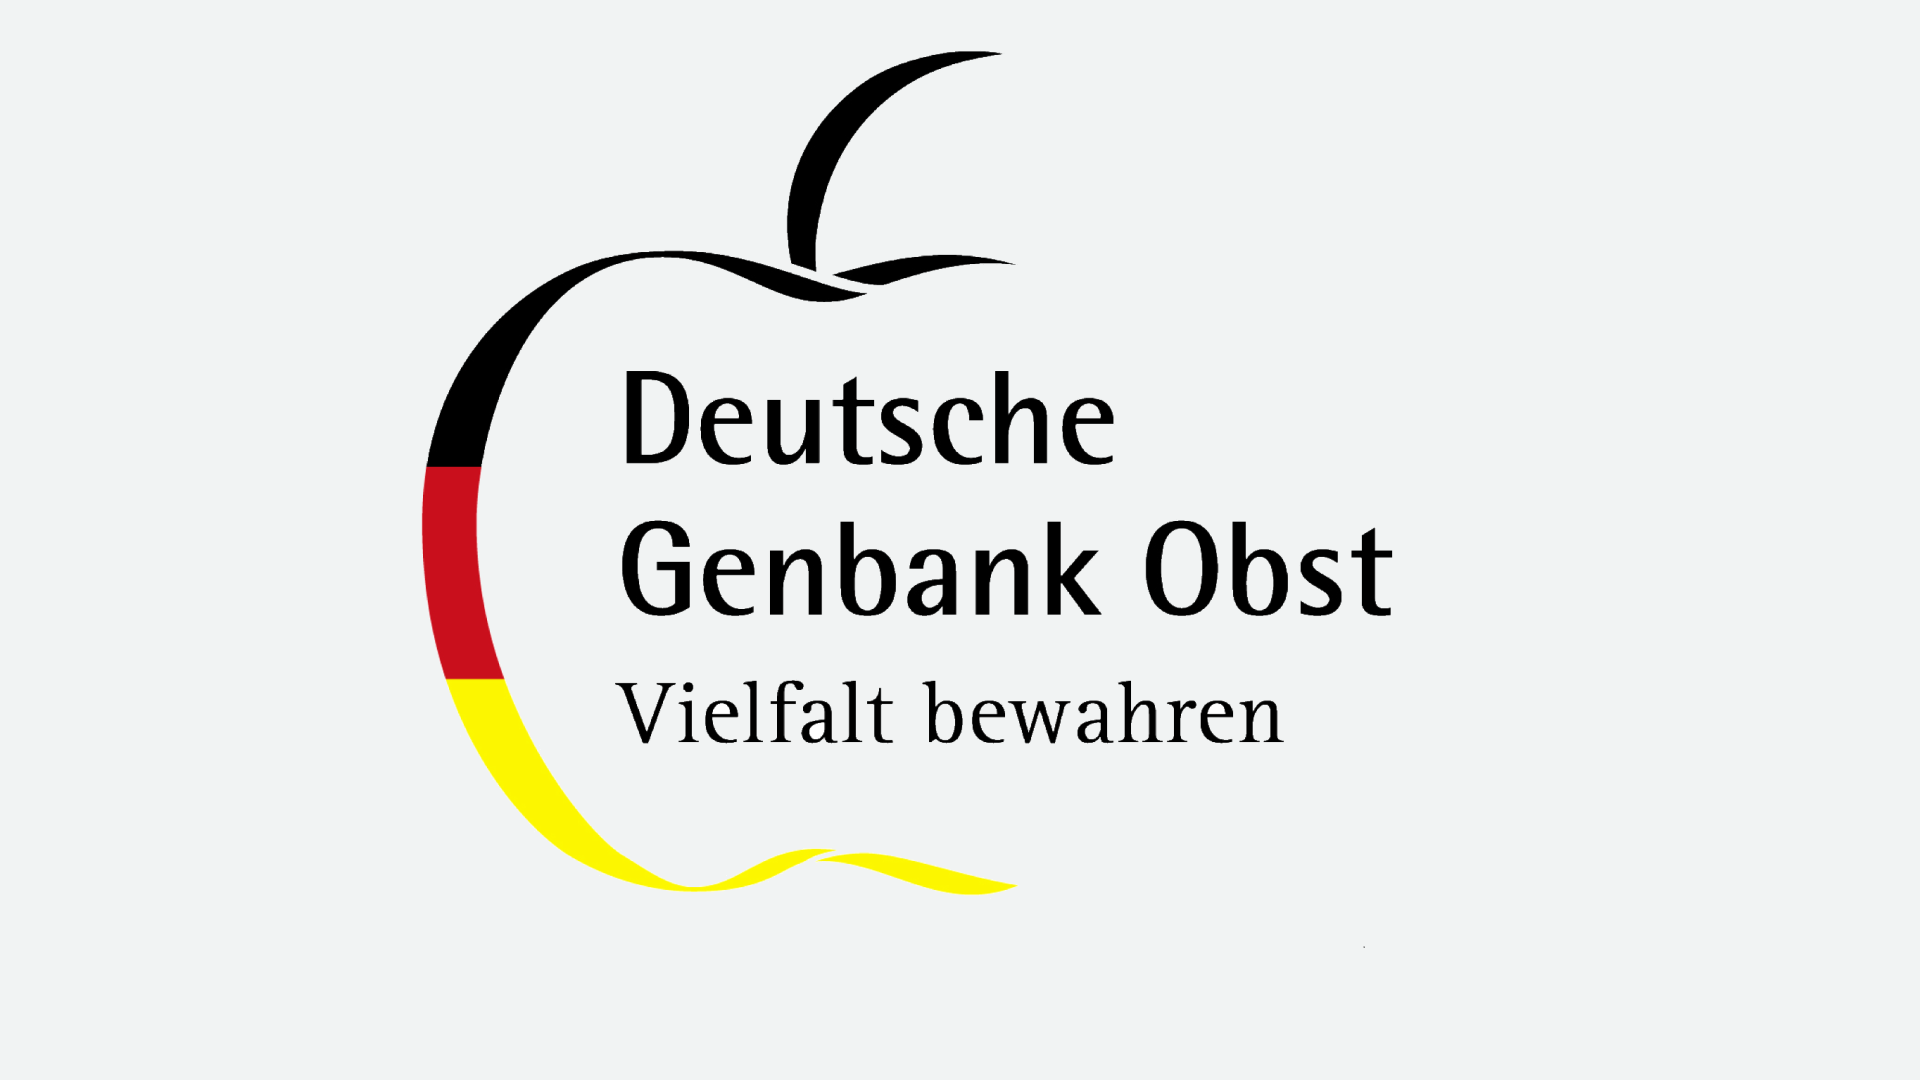 Genbank Obst Logo | © Deutsche Genbank Obst